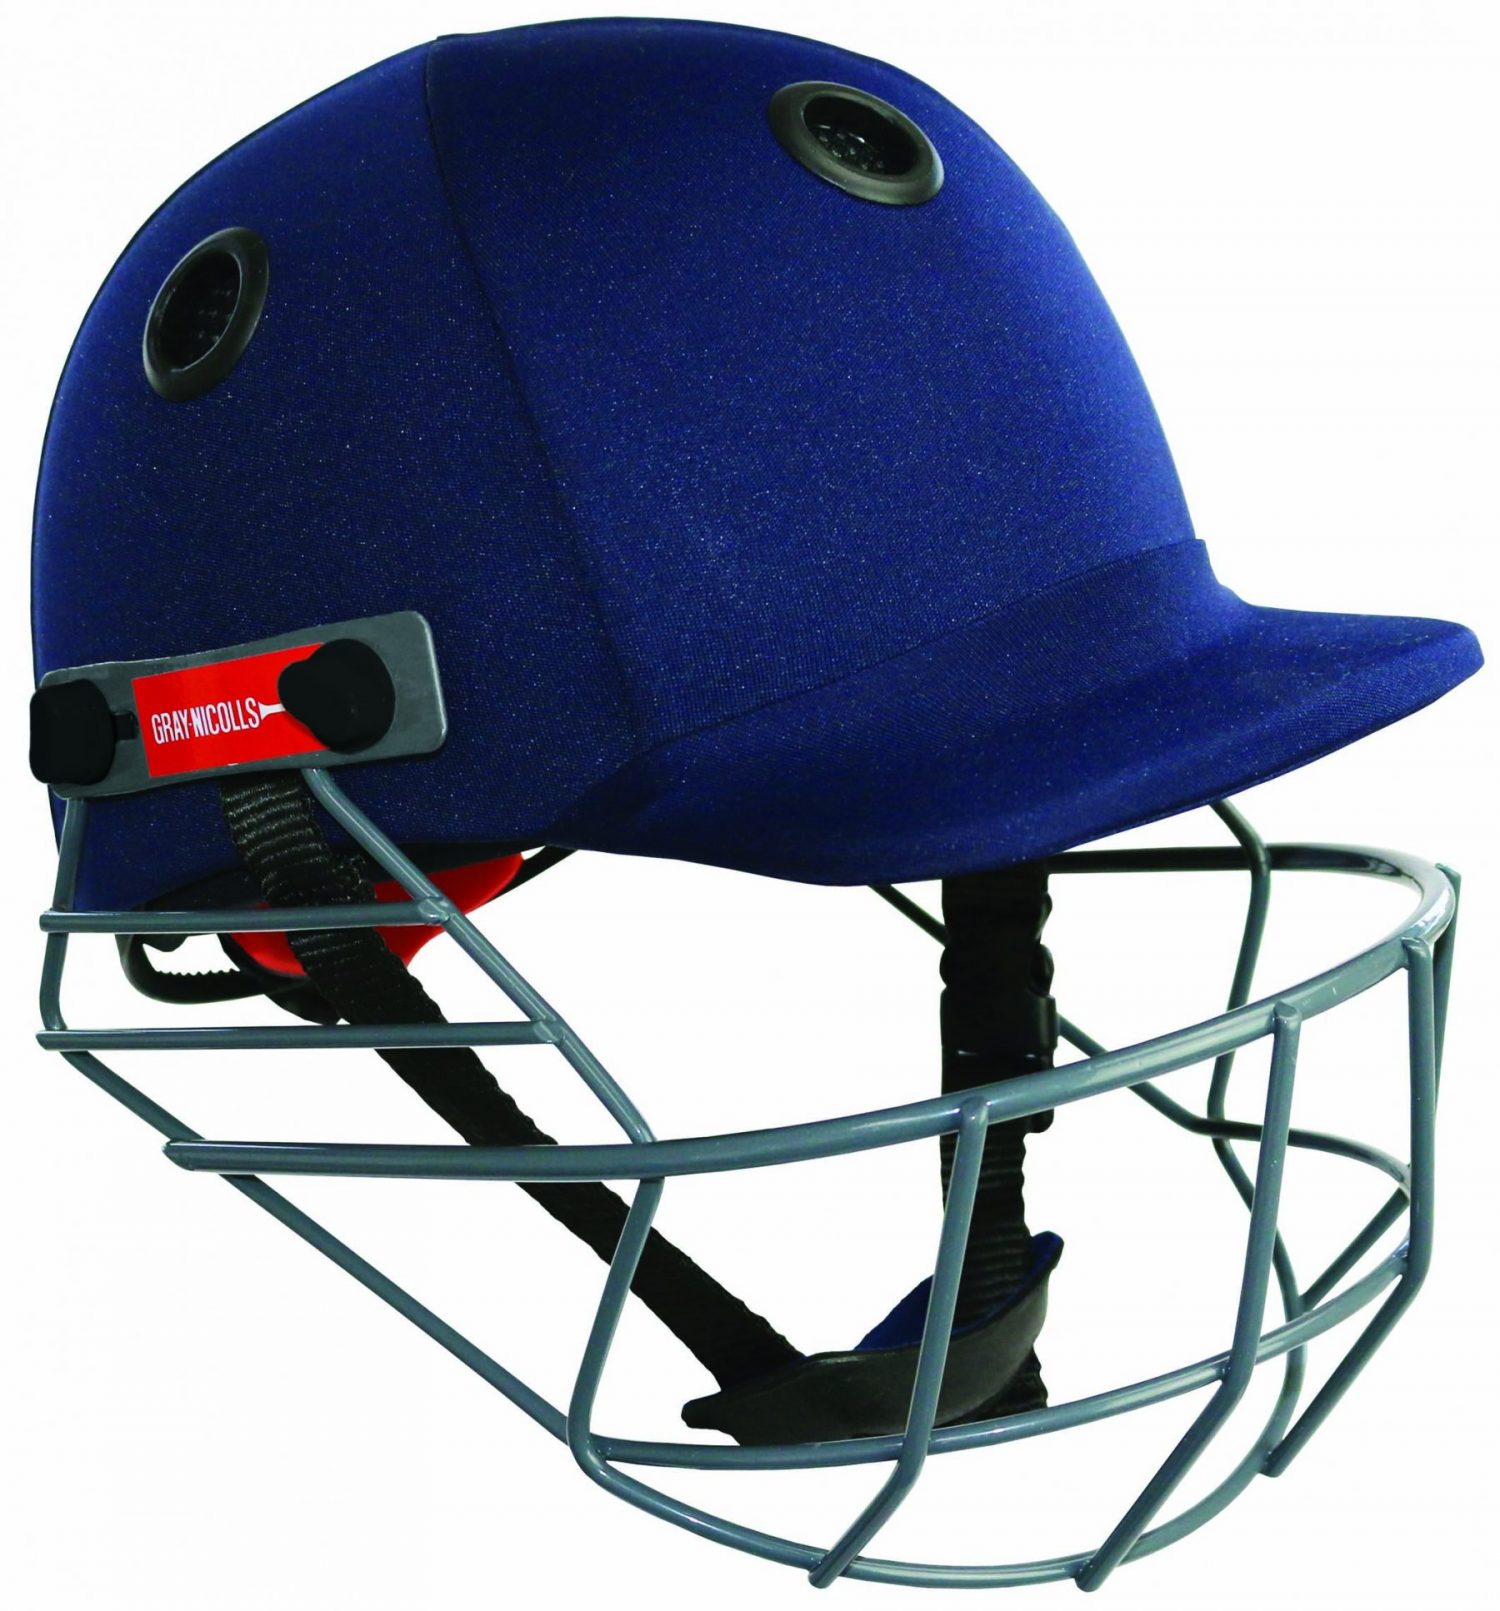 Gray Nicolls Junior Elite Cricket Helmet